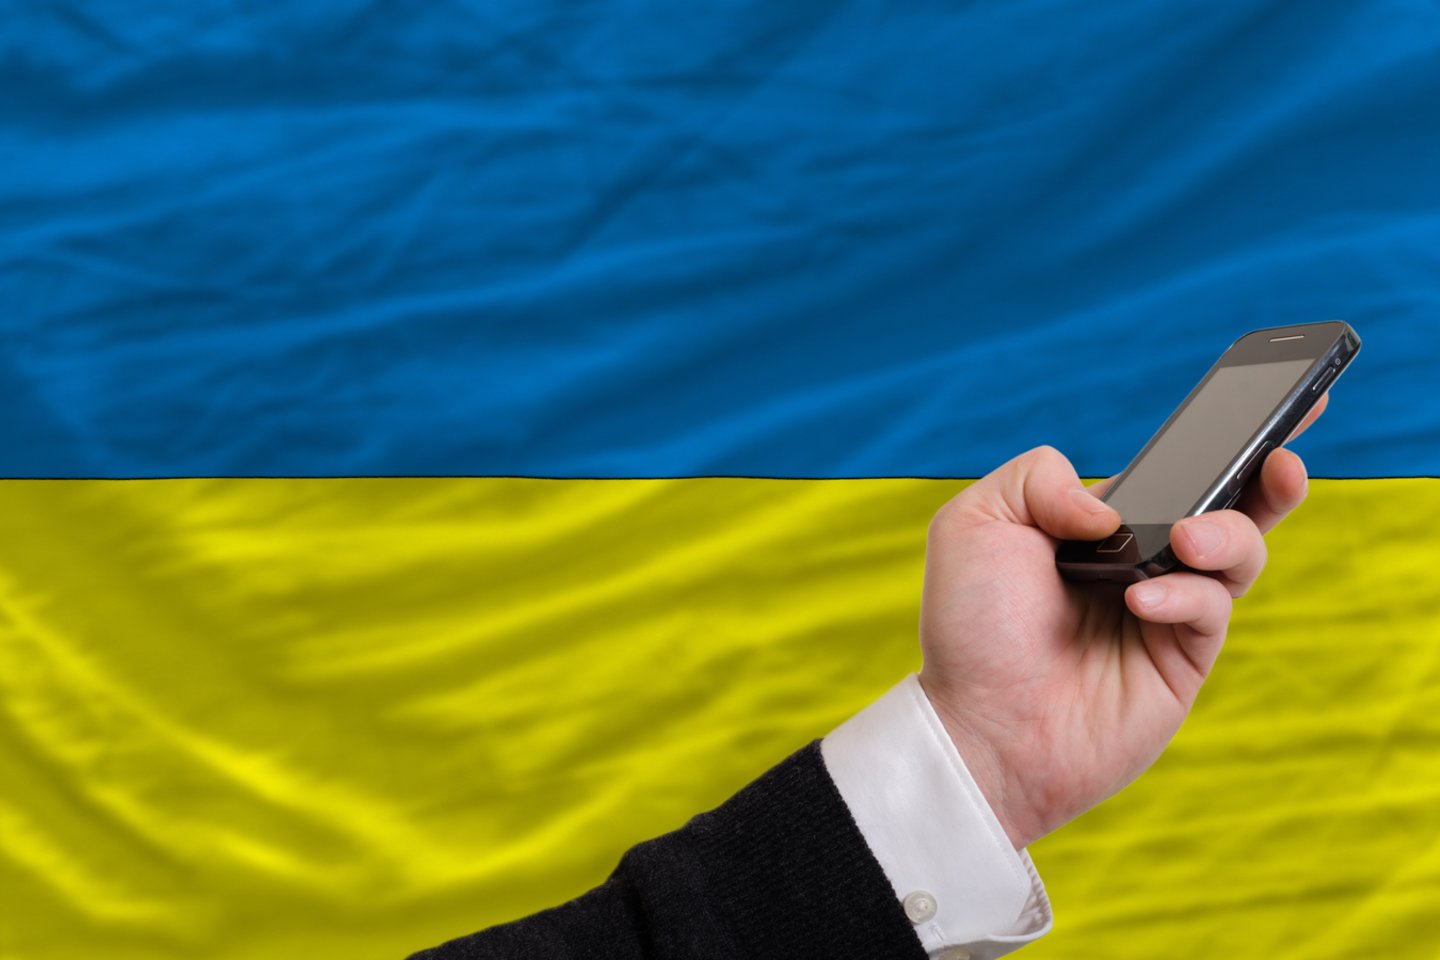  Nuo gegužės 2 d. skambučiai iš Lietuvos į Ukrainą kainuos nuo 0,06 euro už minutę.<br> 123rf nuotr.